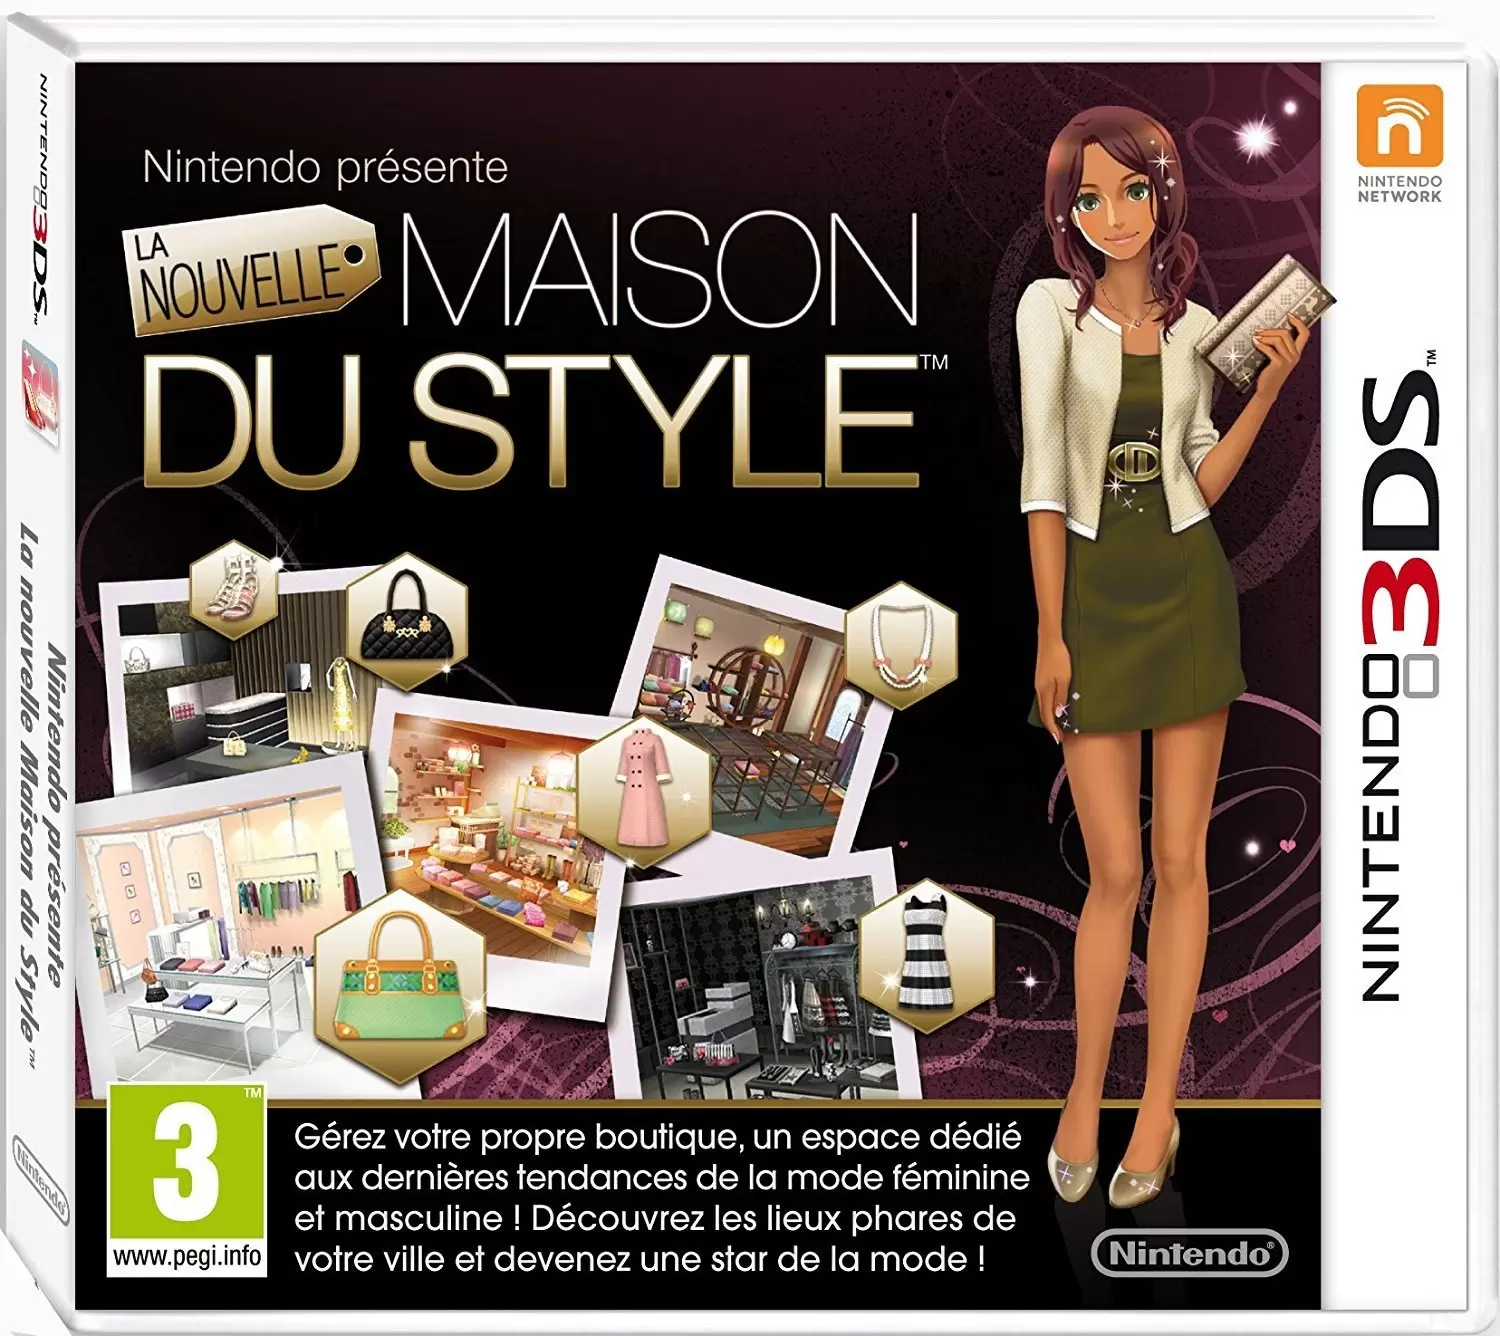 Nintendo 2DS / 3DS Games - La nouvelle maison du style